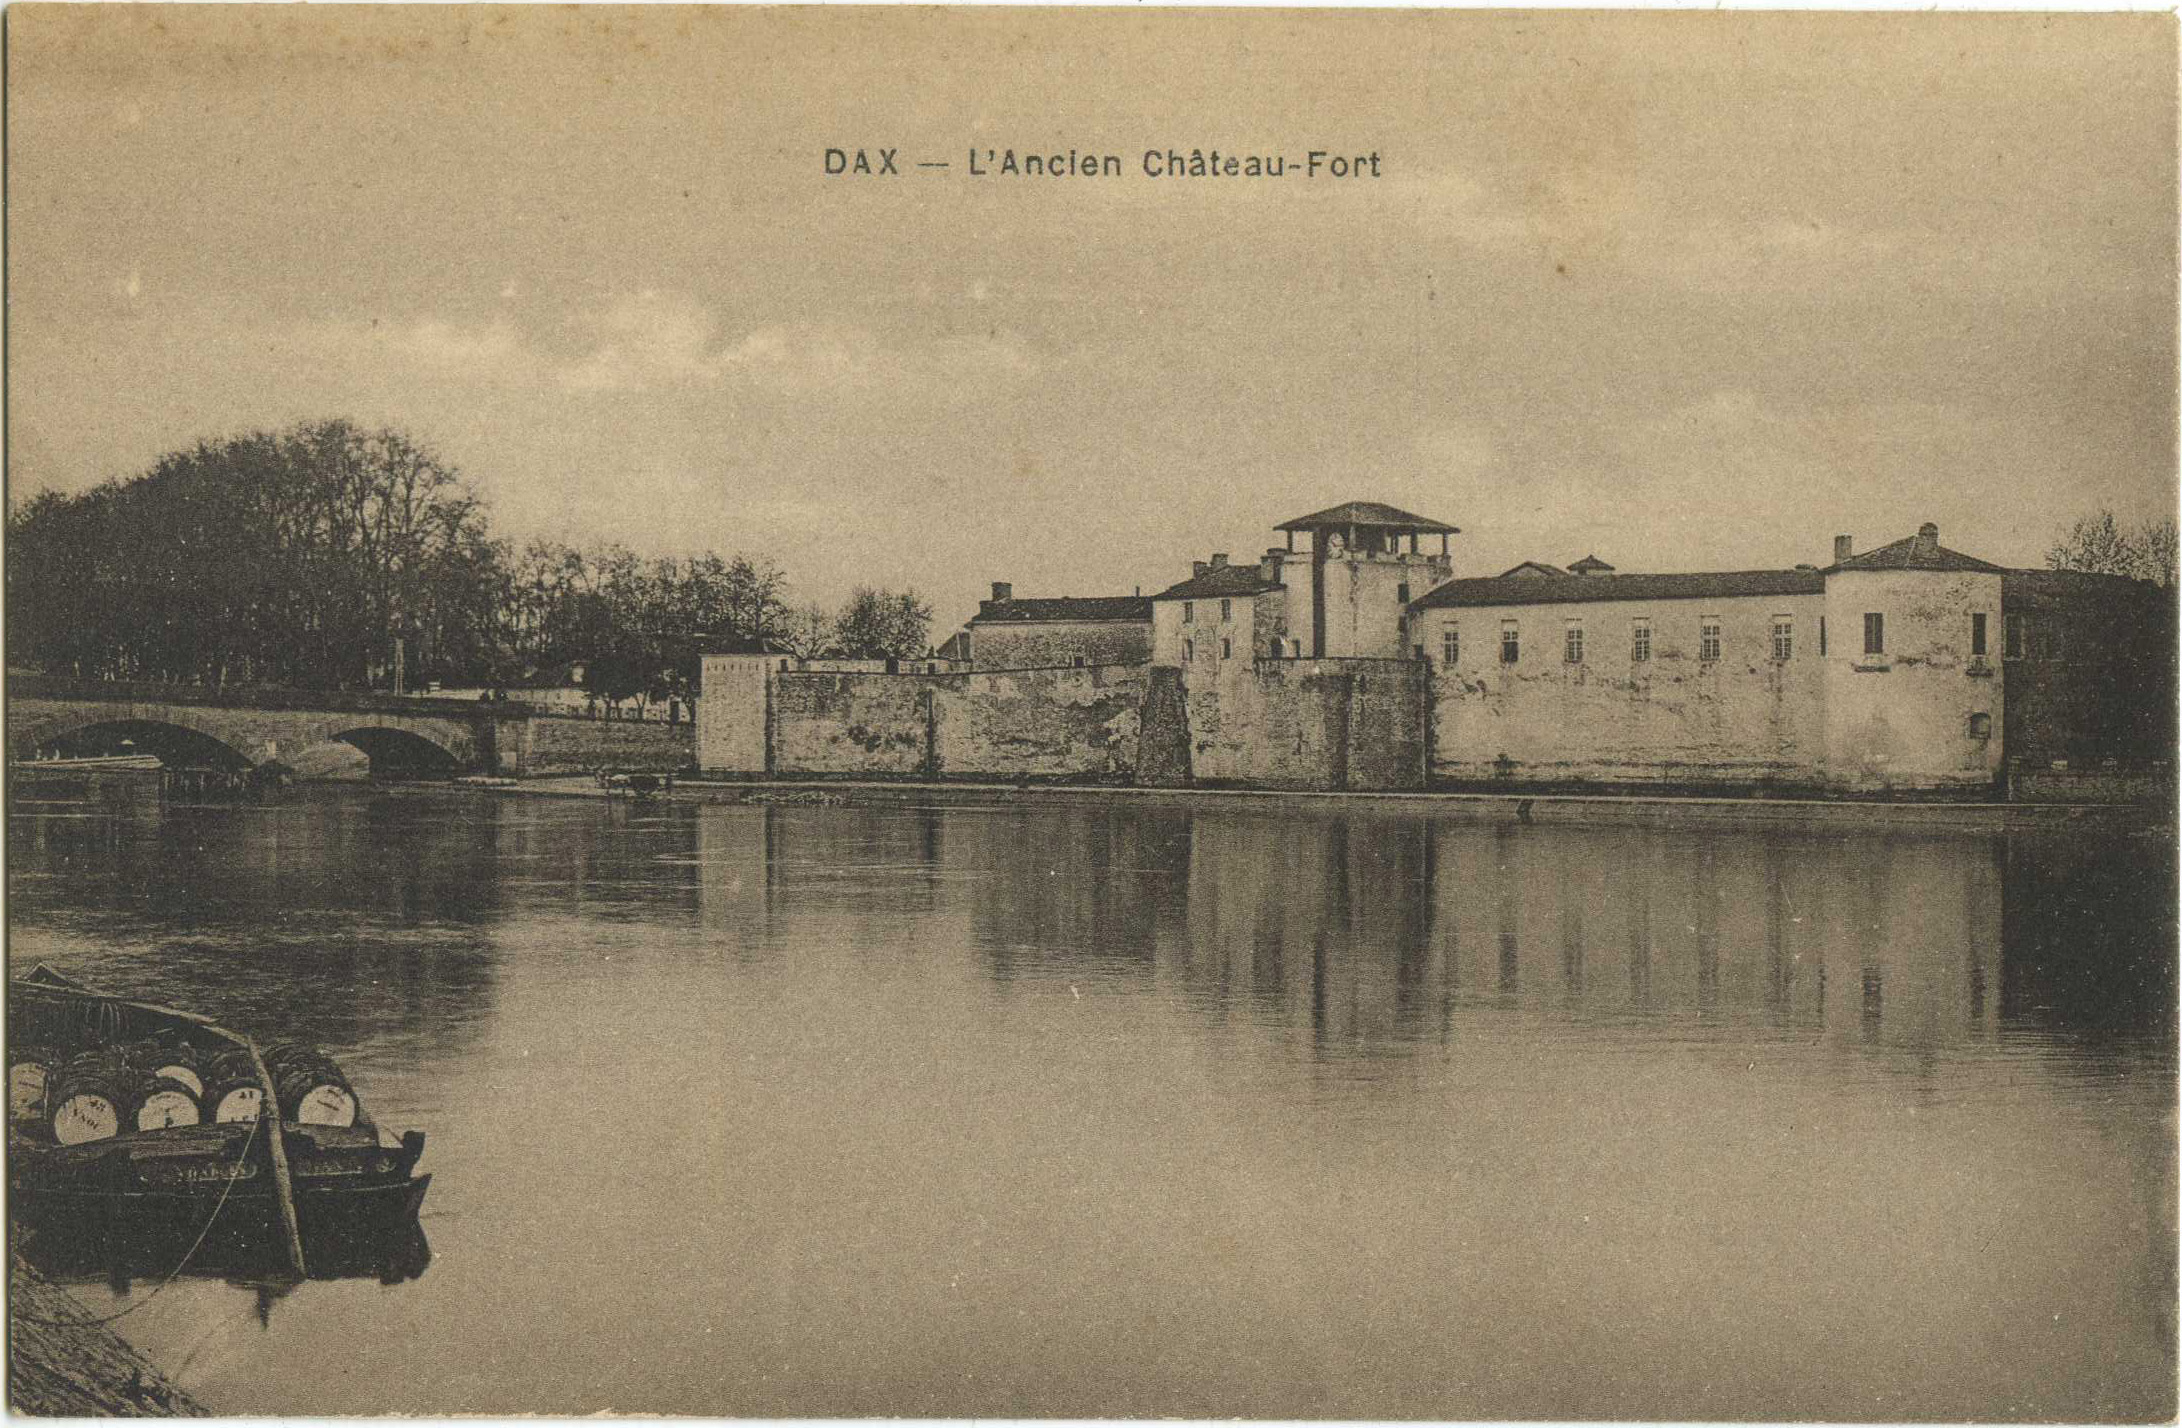 Dax - L'Ancien Château-Fort